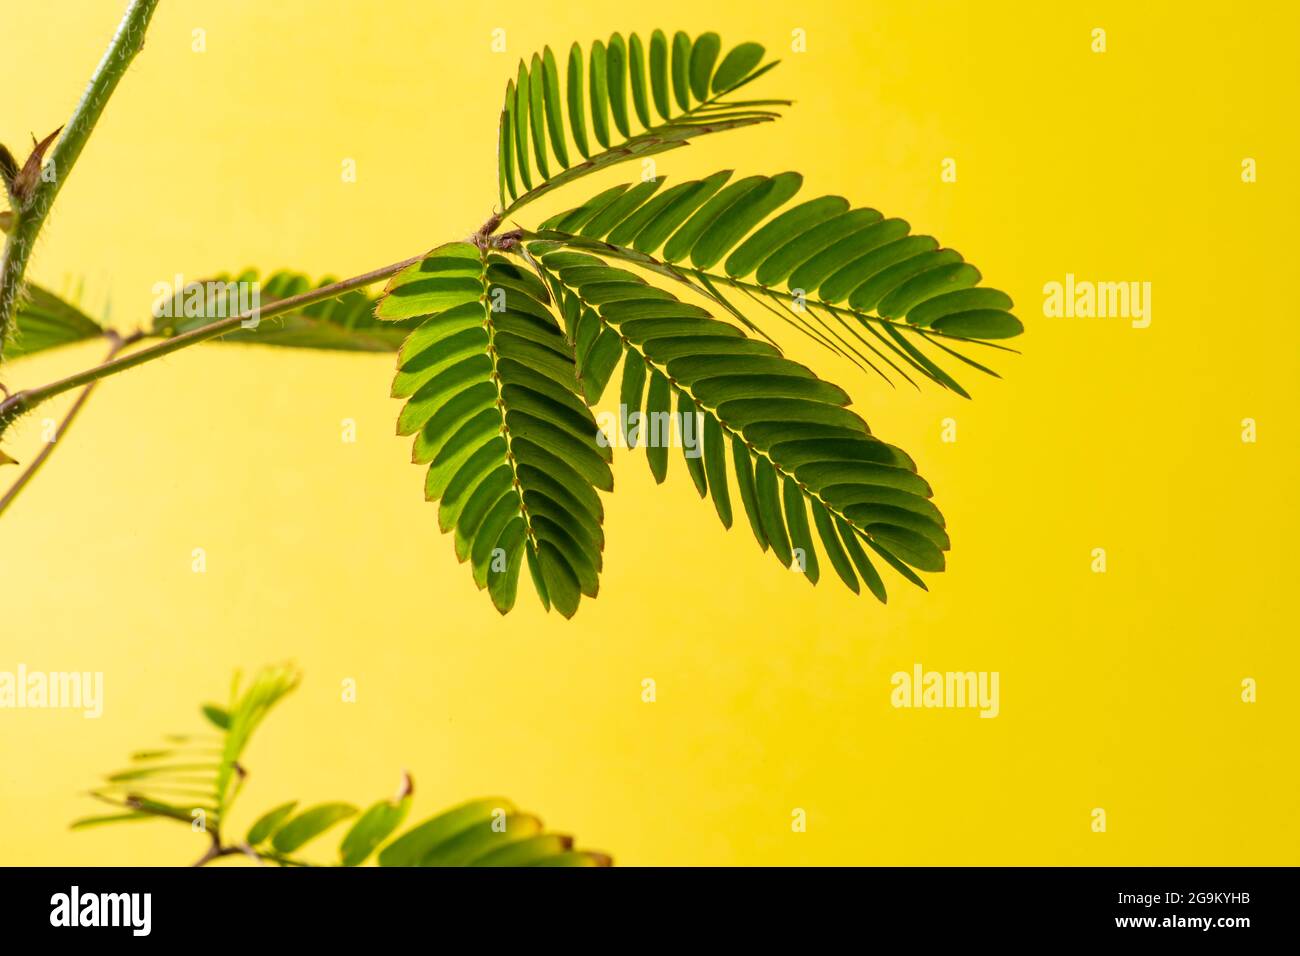 Mimosa pudica, schüchtern, niederträchtig oder schrumpfend auch als empfindliche Pflanze, verschlafen Pflanze, Aktion Pflanze, Touch-Me-Not, Schampflanze ist eine kriechende jährliche Stockfoto